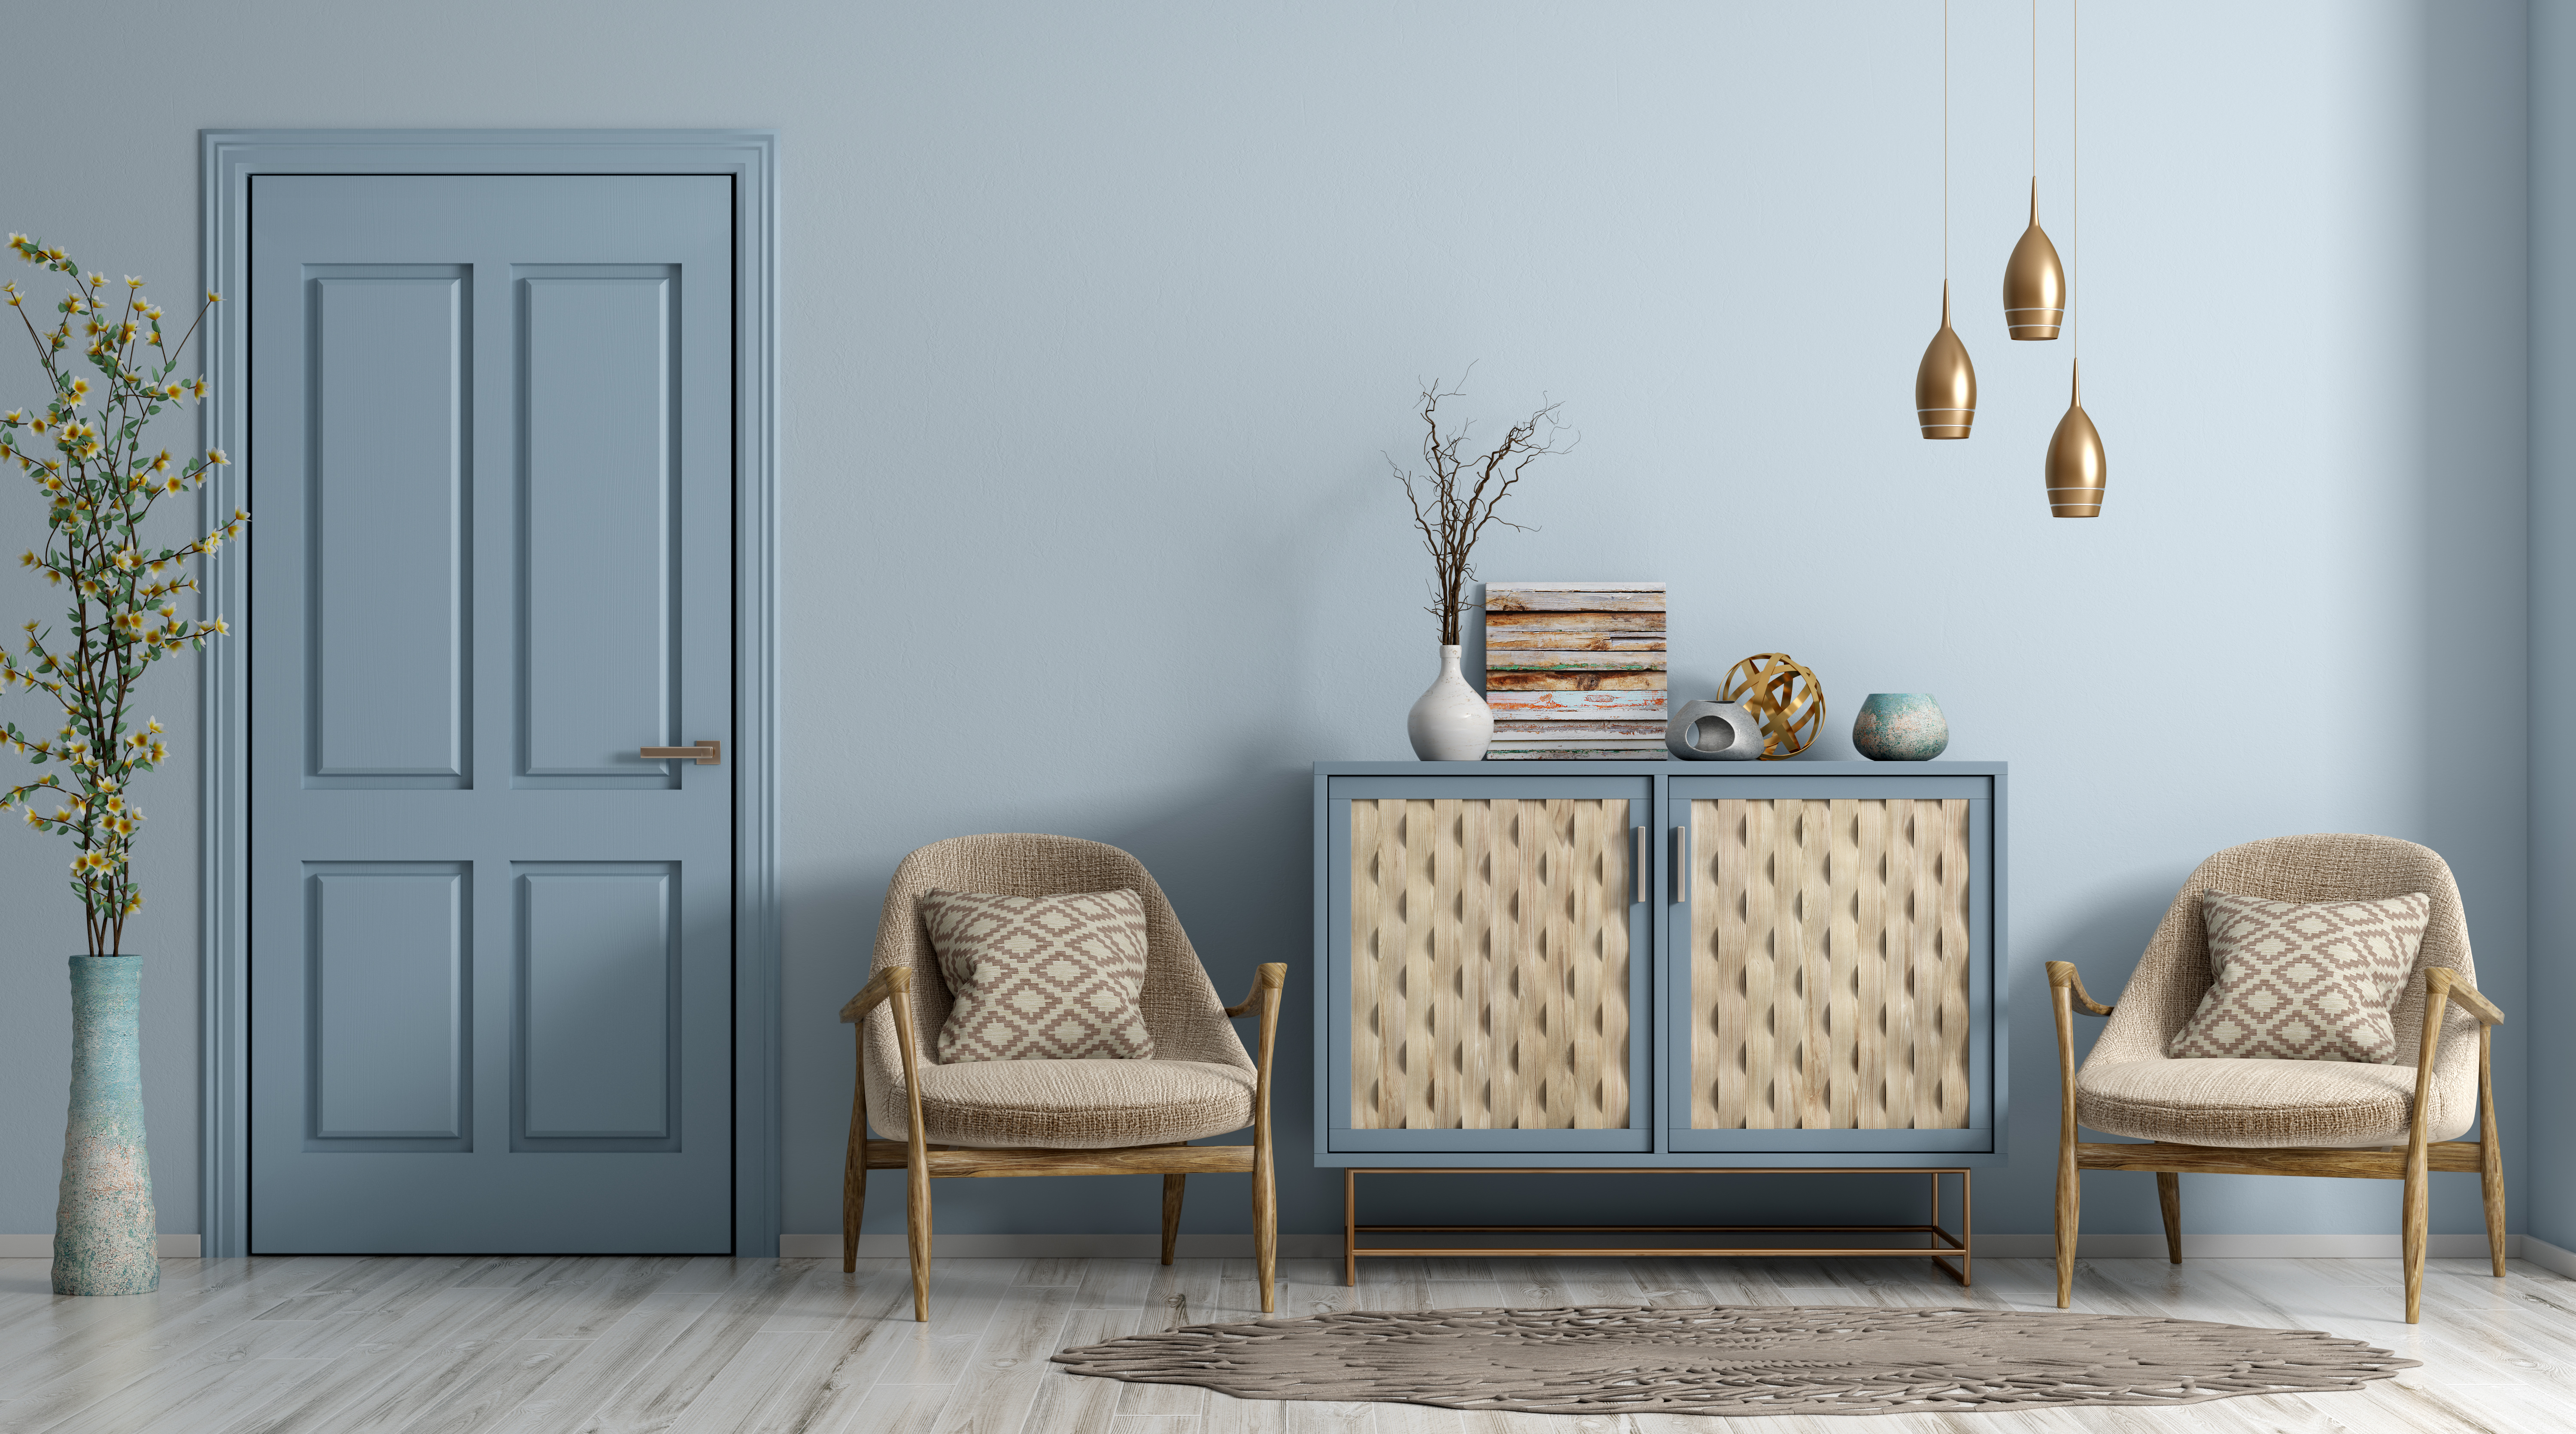 Intérieur moderne d'un salon avec porte, fauteuils et commode rendu bleu pâle peintures mf